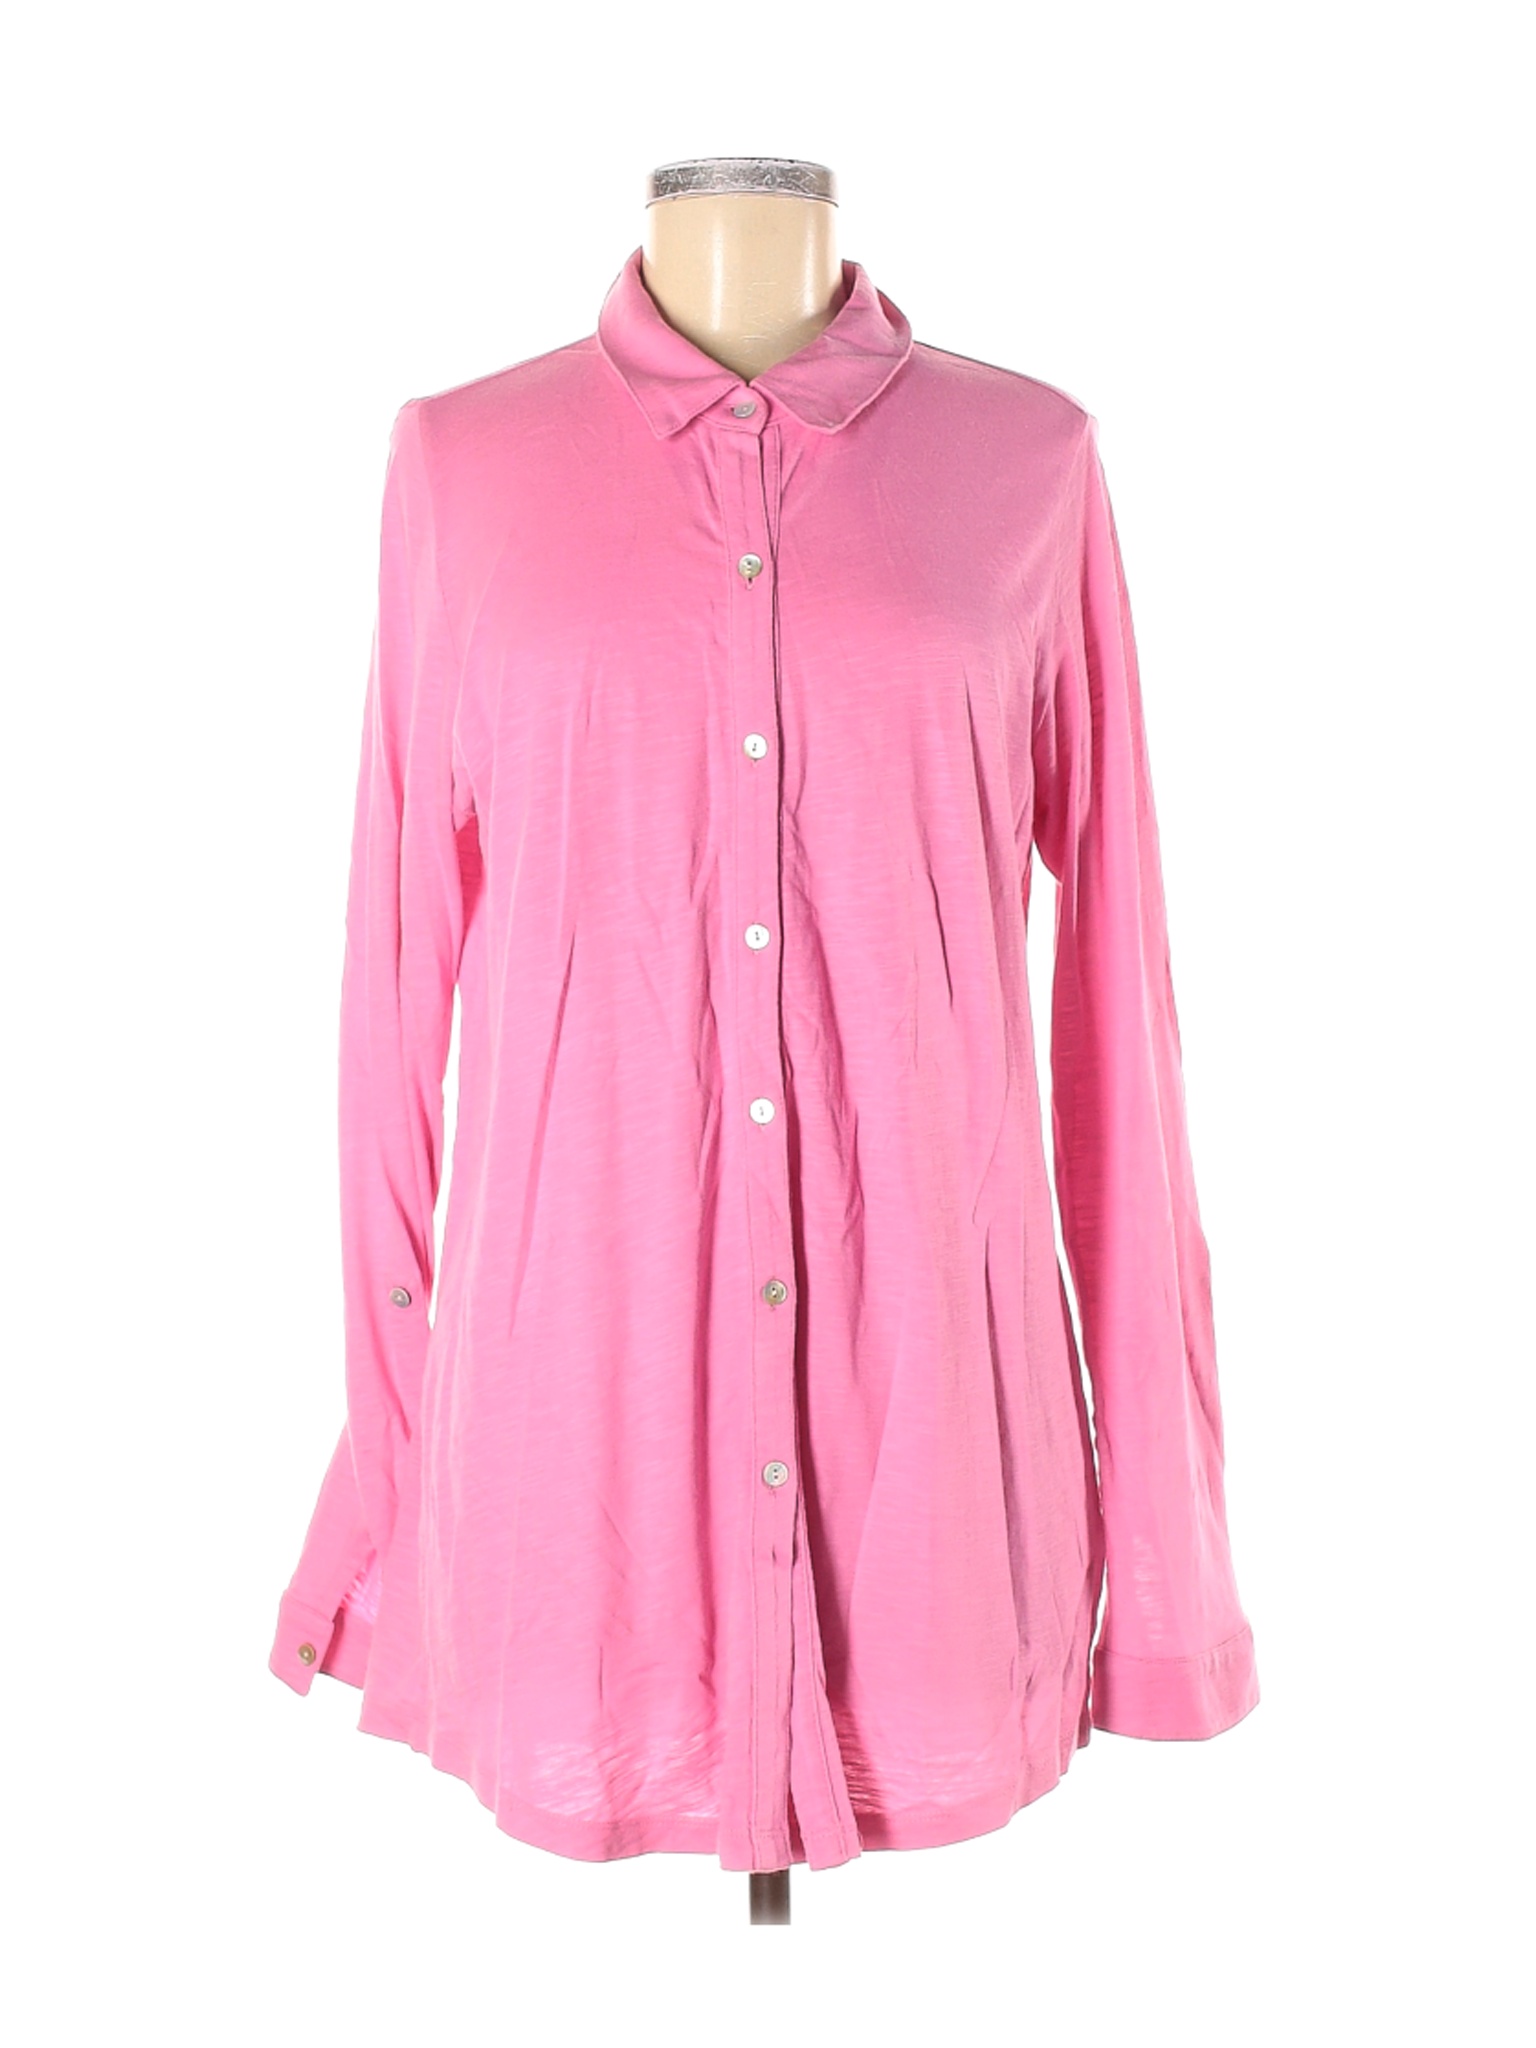 J.Jill Women Pink Long Sleeve Button-Down Shirt M | eBay